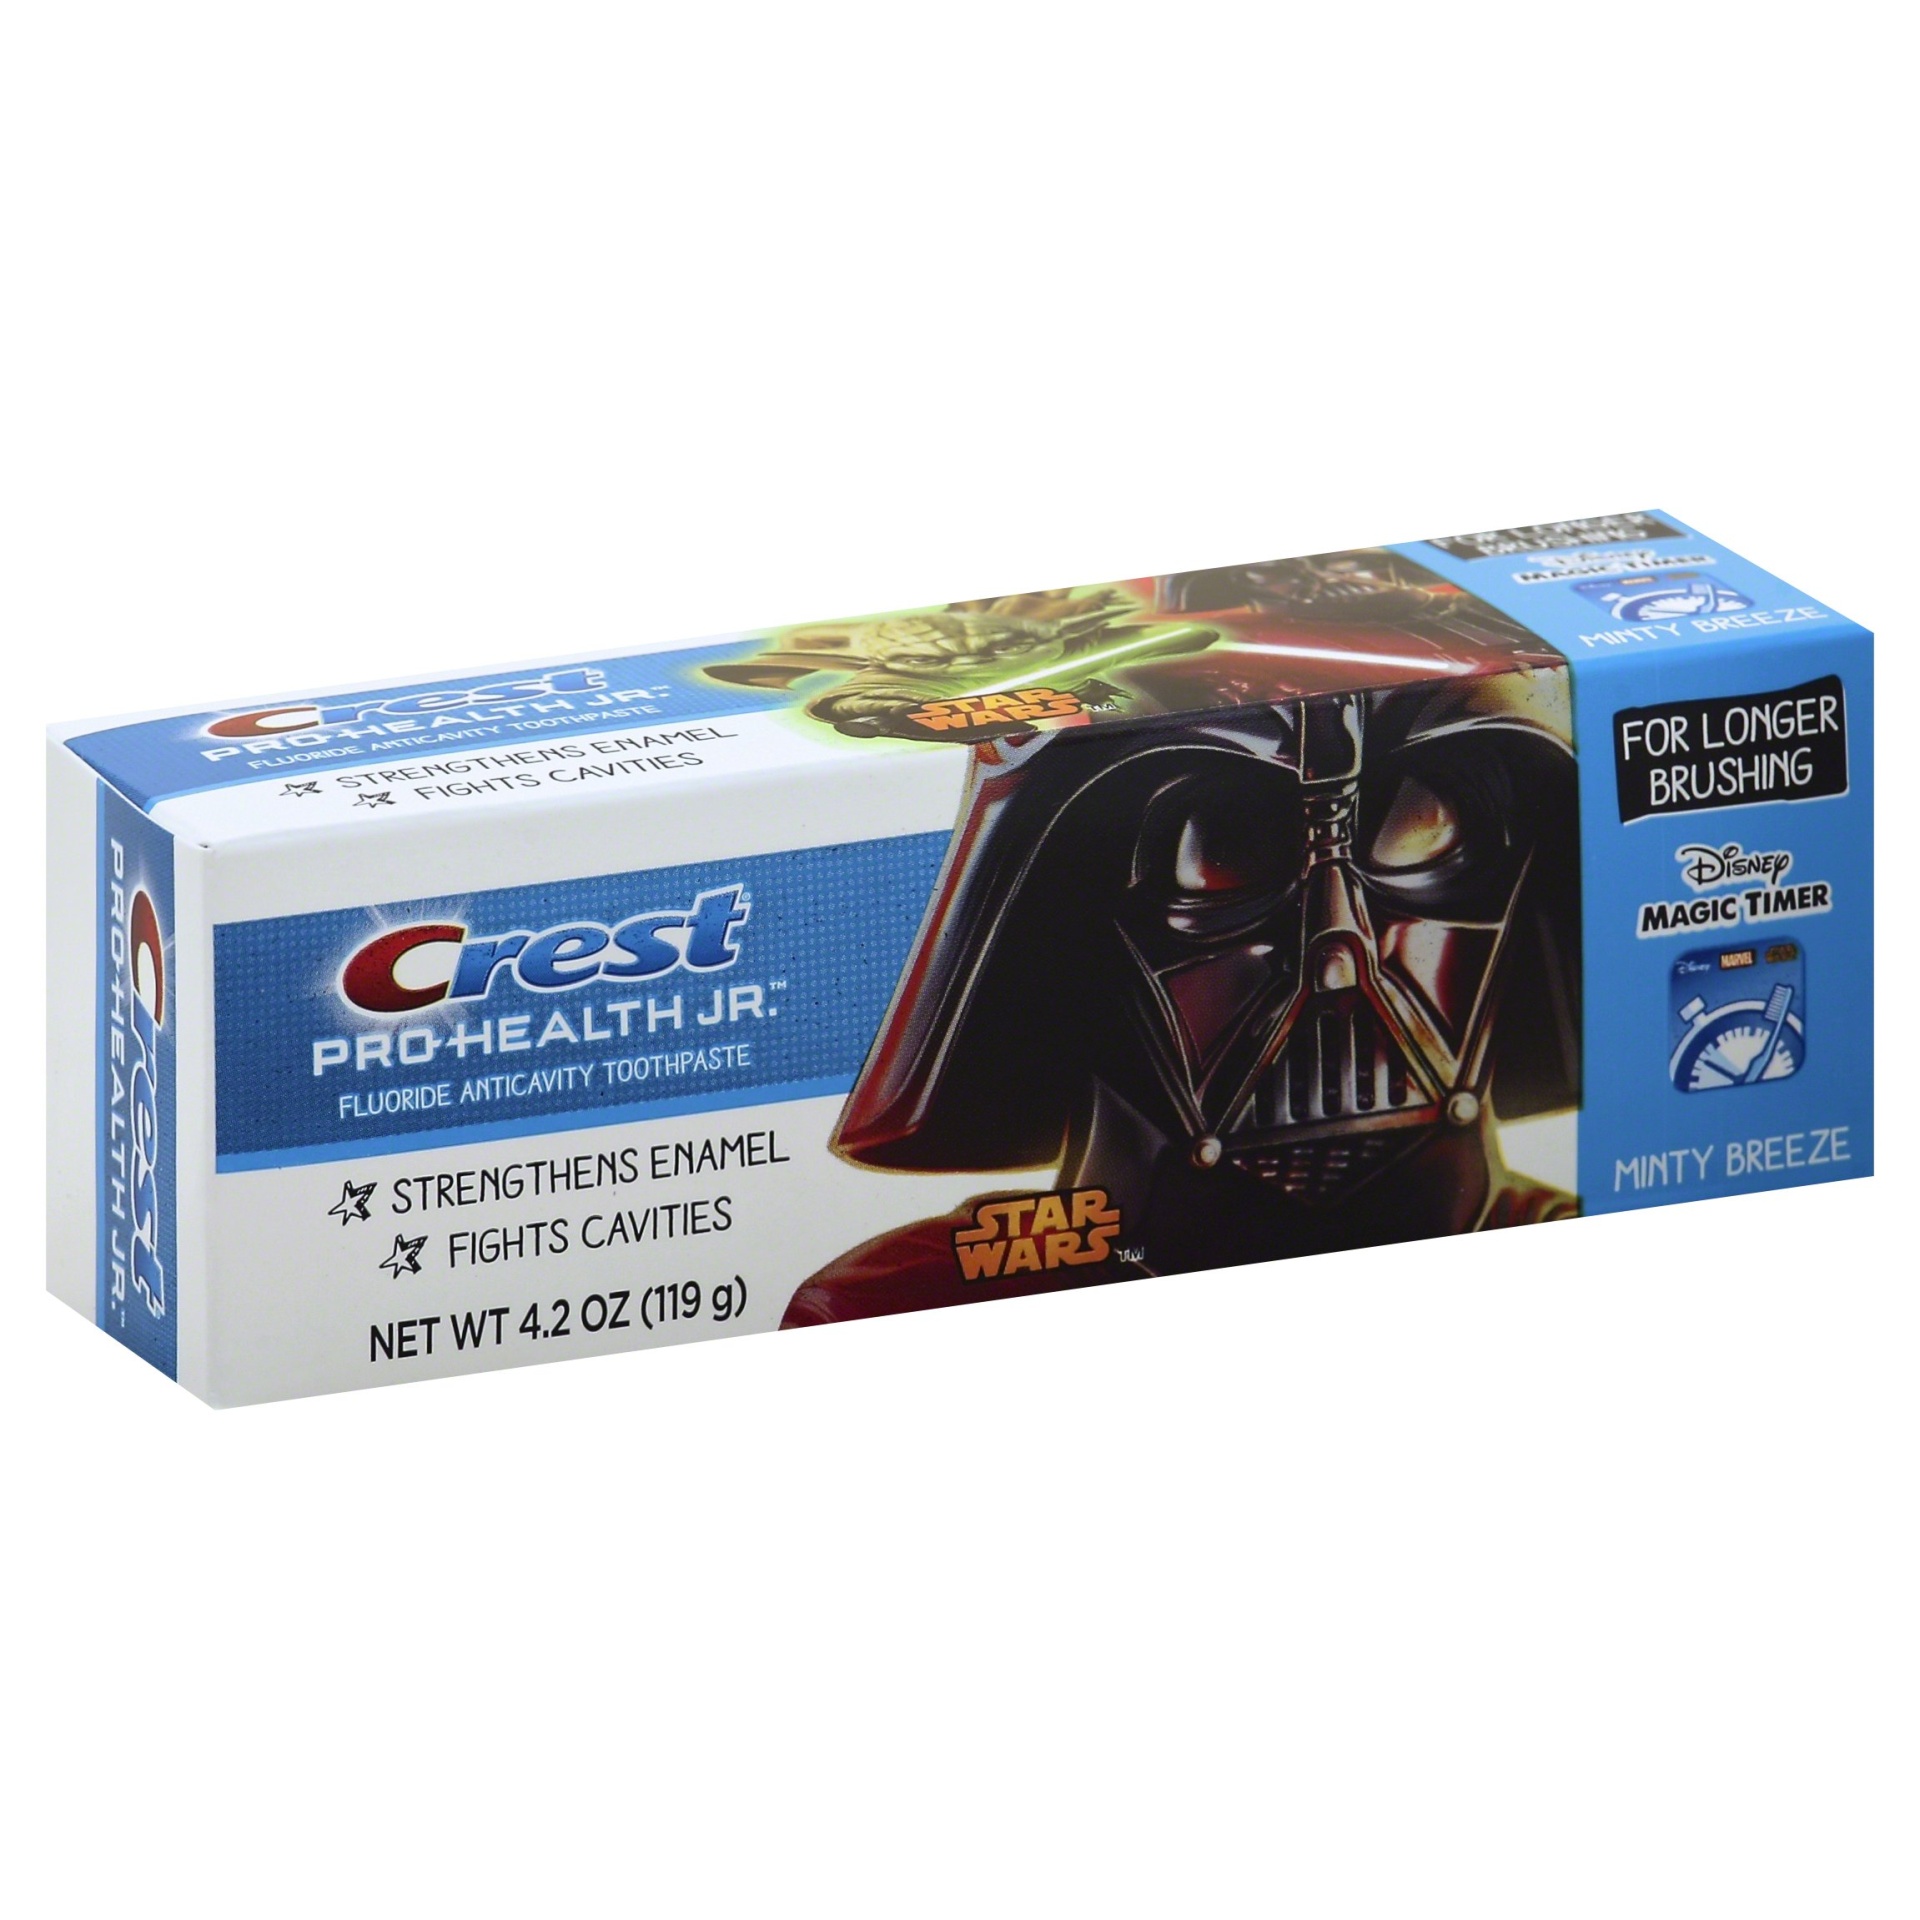 slide 1 of 1, Crest Pro-Health JR Star Wars Kids Minty Breeze Toothpaste, 4.2 oz